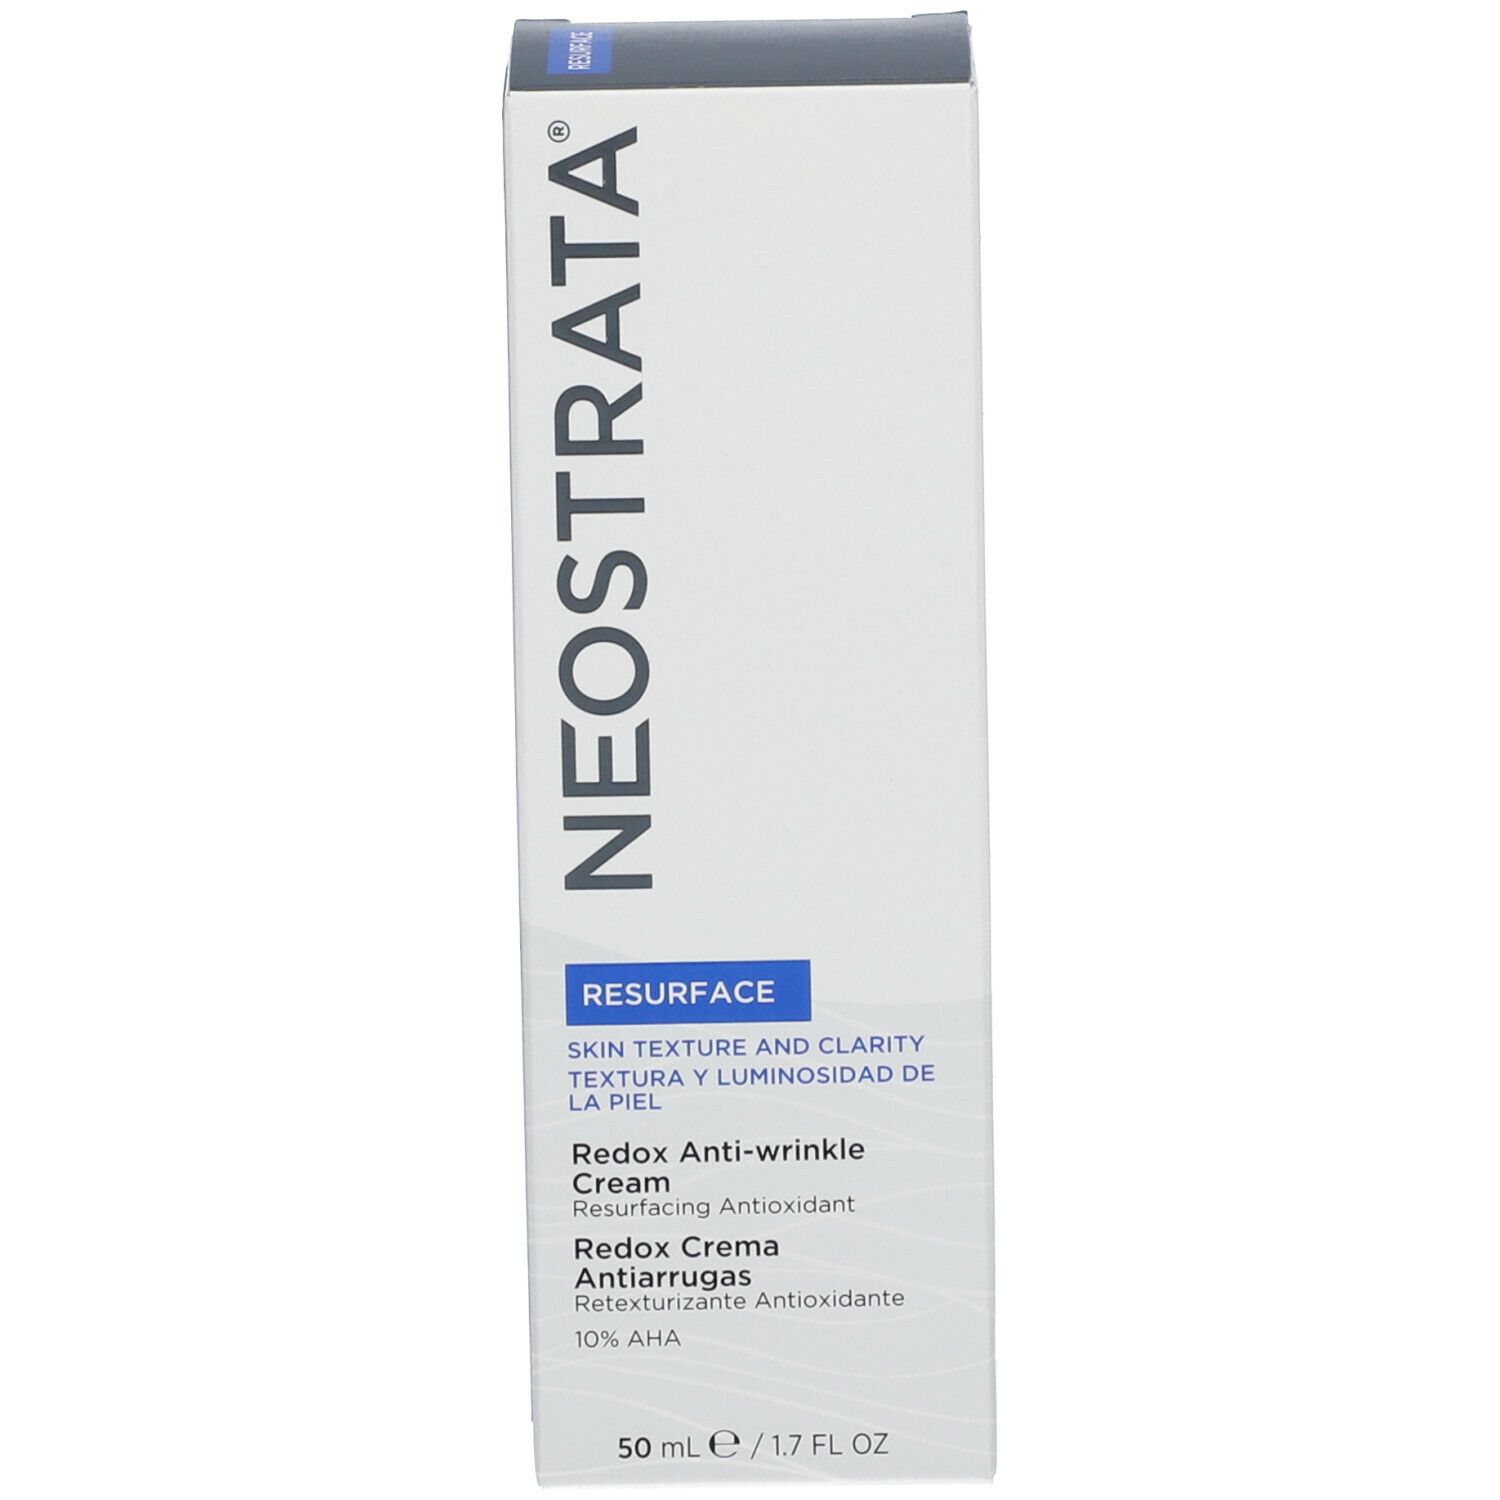 NeoStrata® Resurface Redox Cream 10 AHA